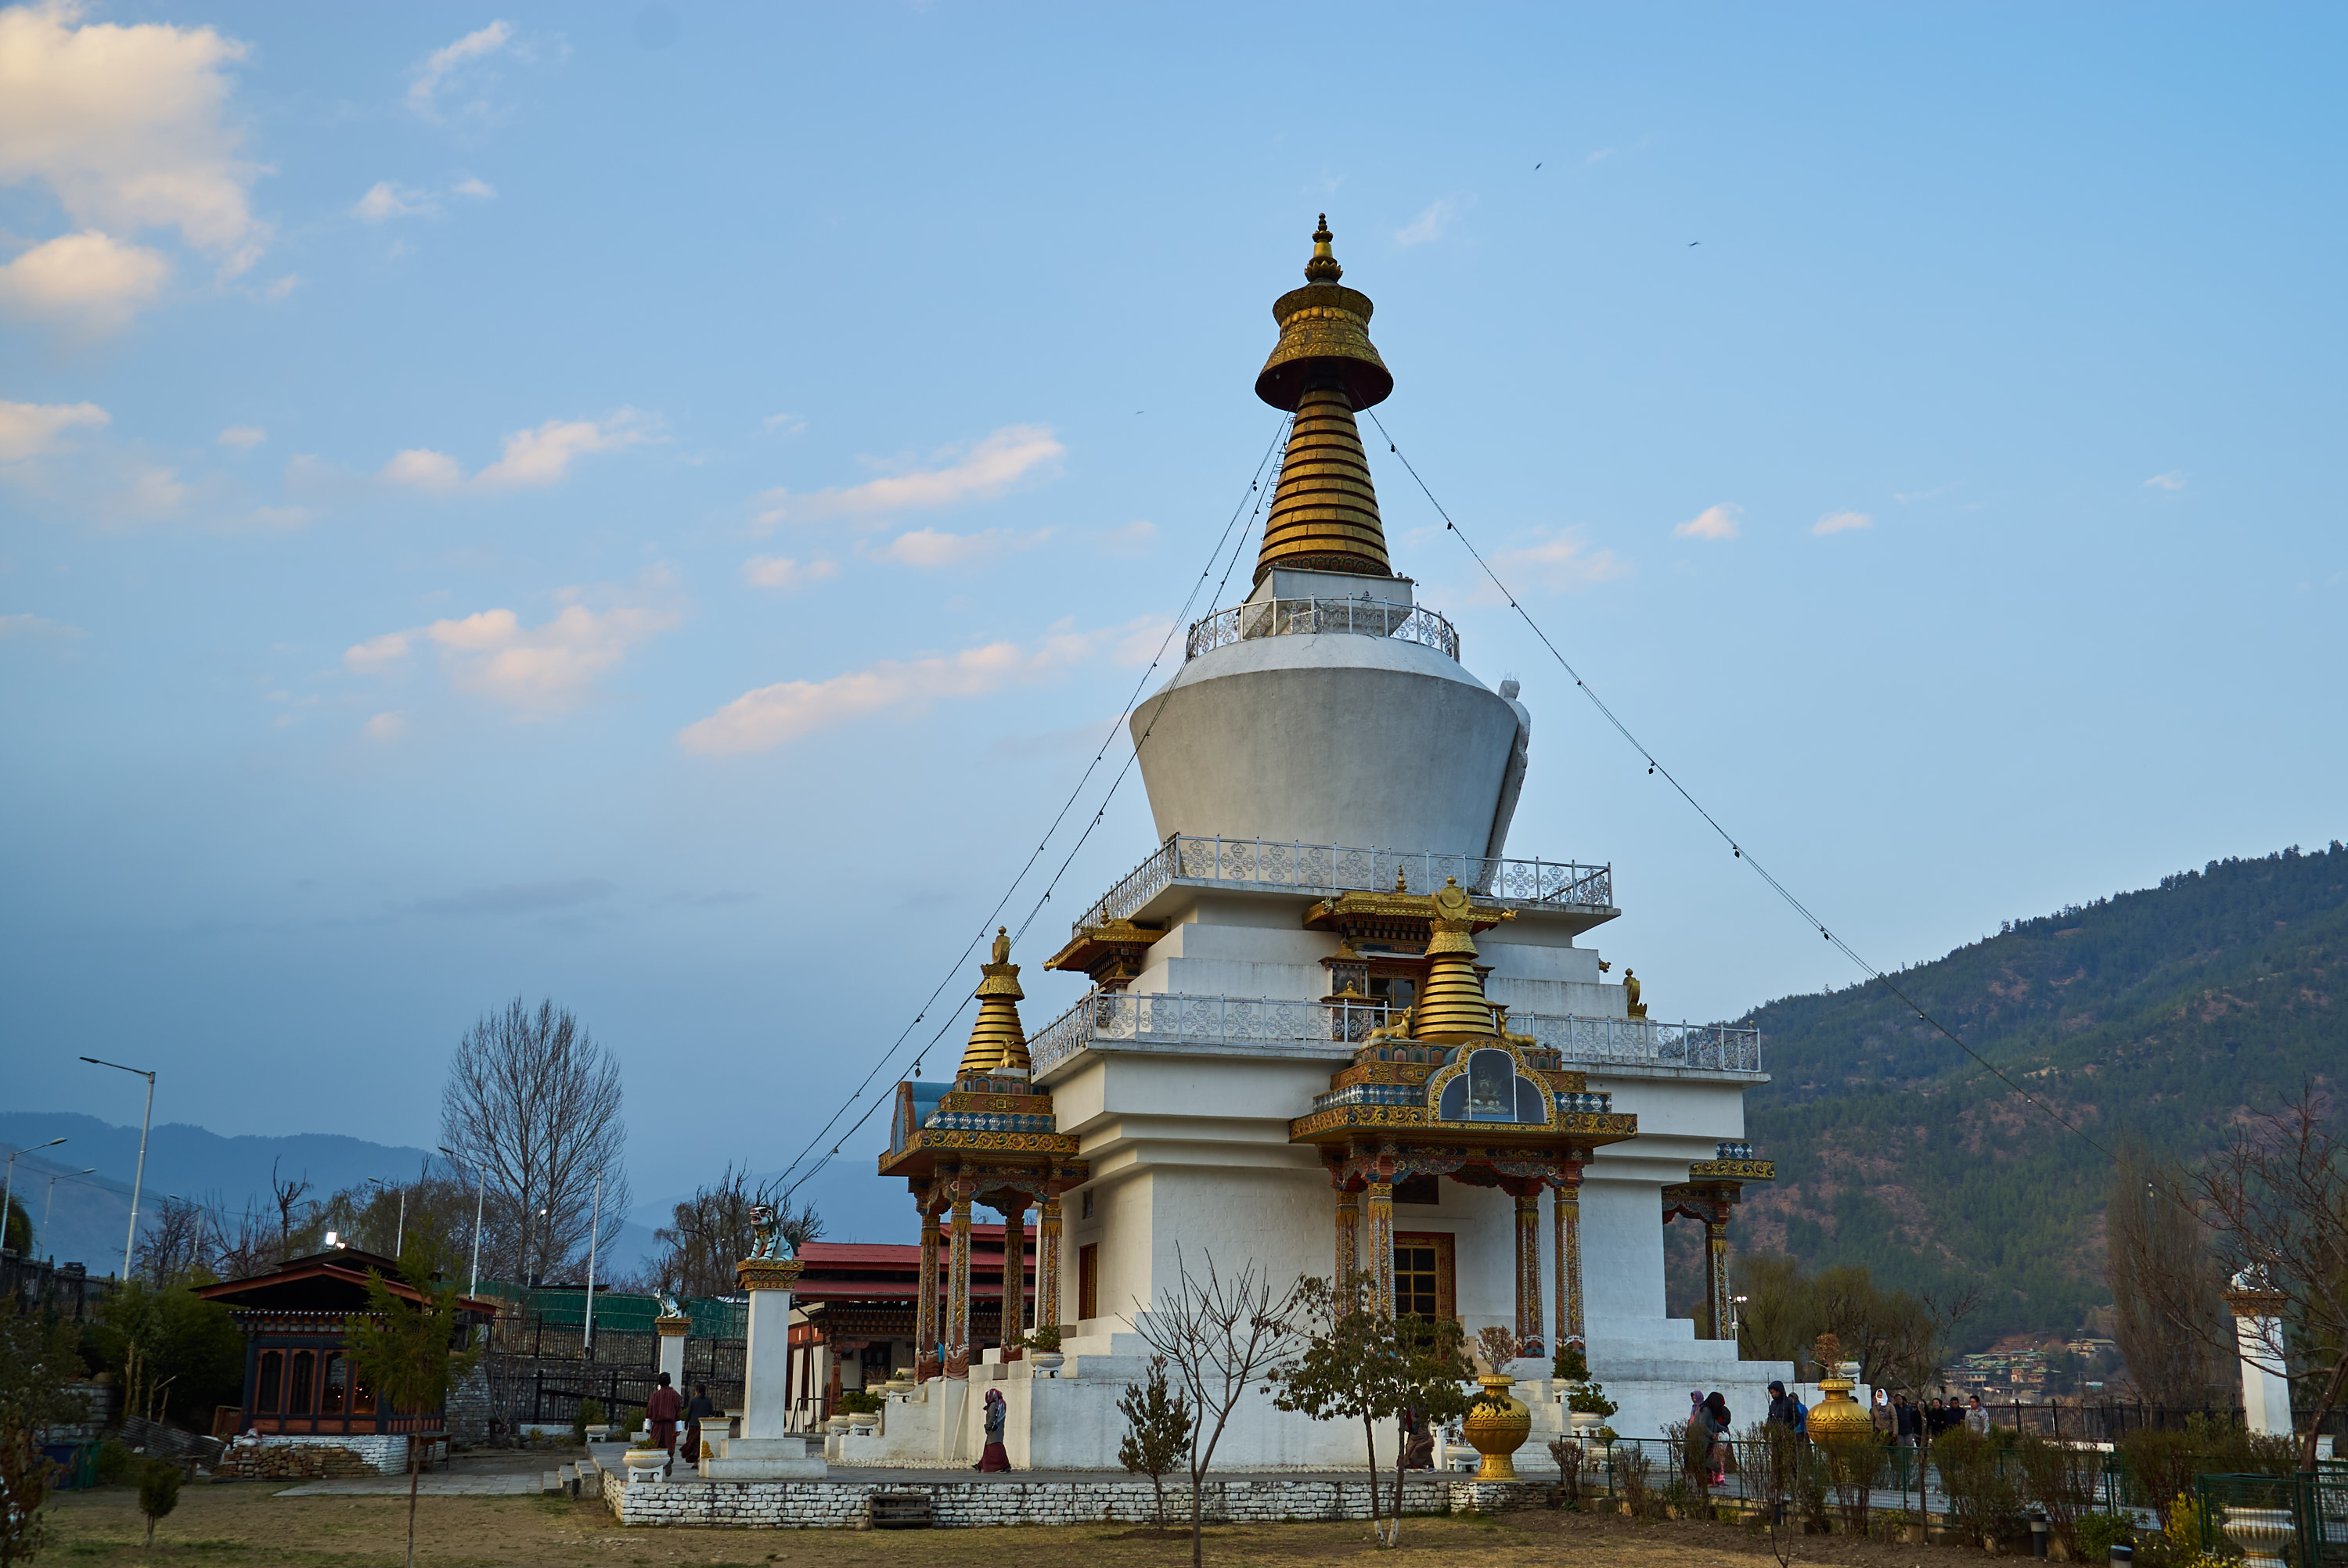 Священные сооружения буддизма картинки